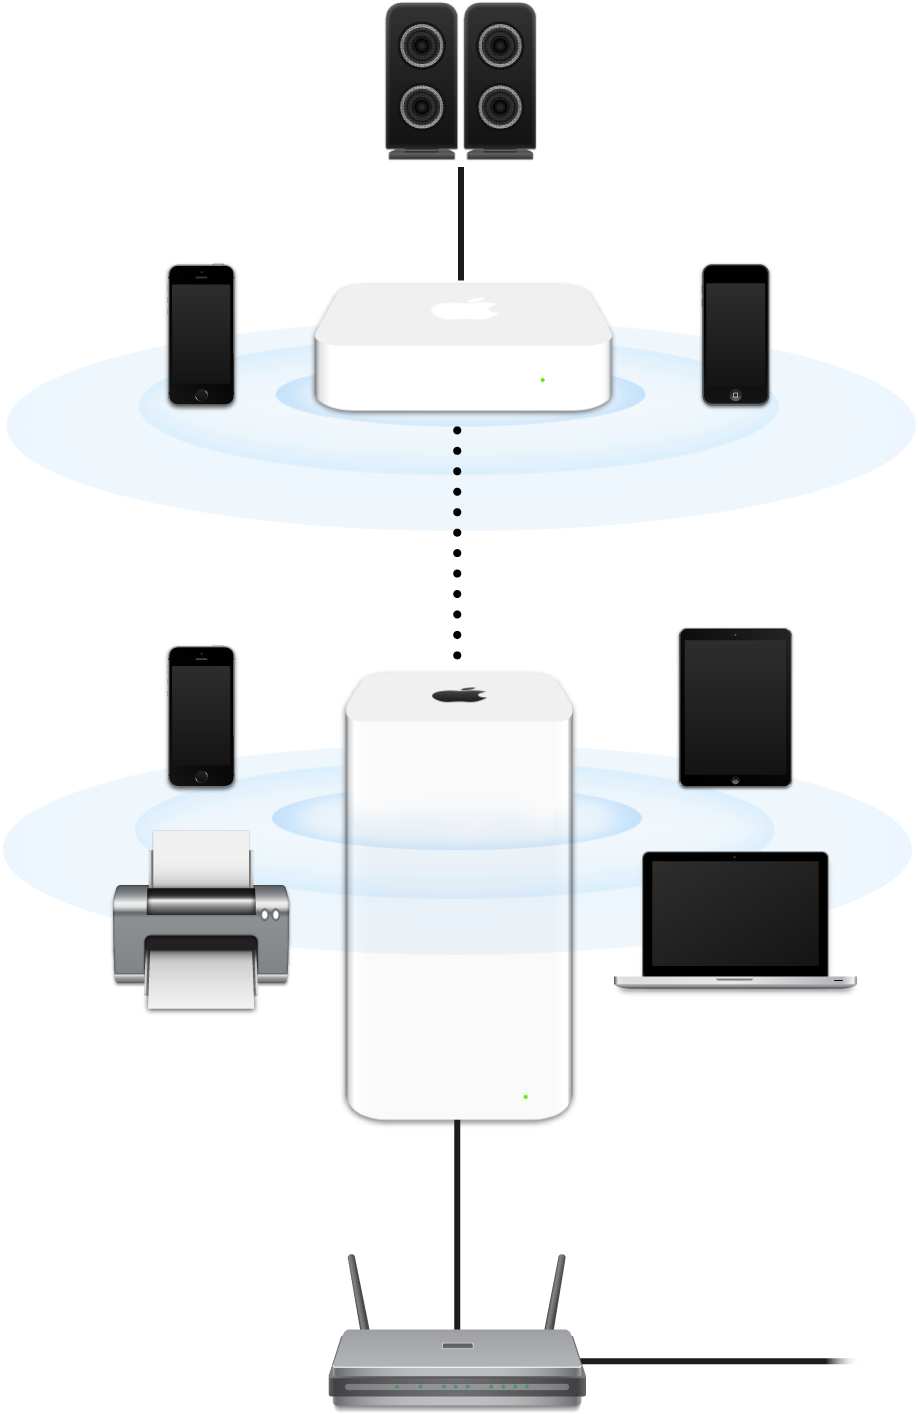 Ett utökat nätverk som omfattar en AirPort Extreme och en AirPort Express som är anslutna till ett modem och sänder till olika enheter.